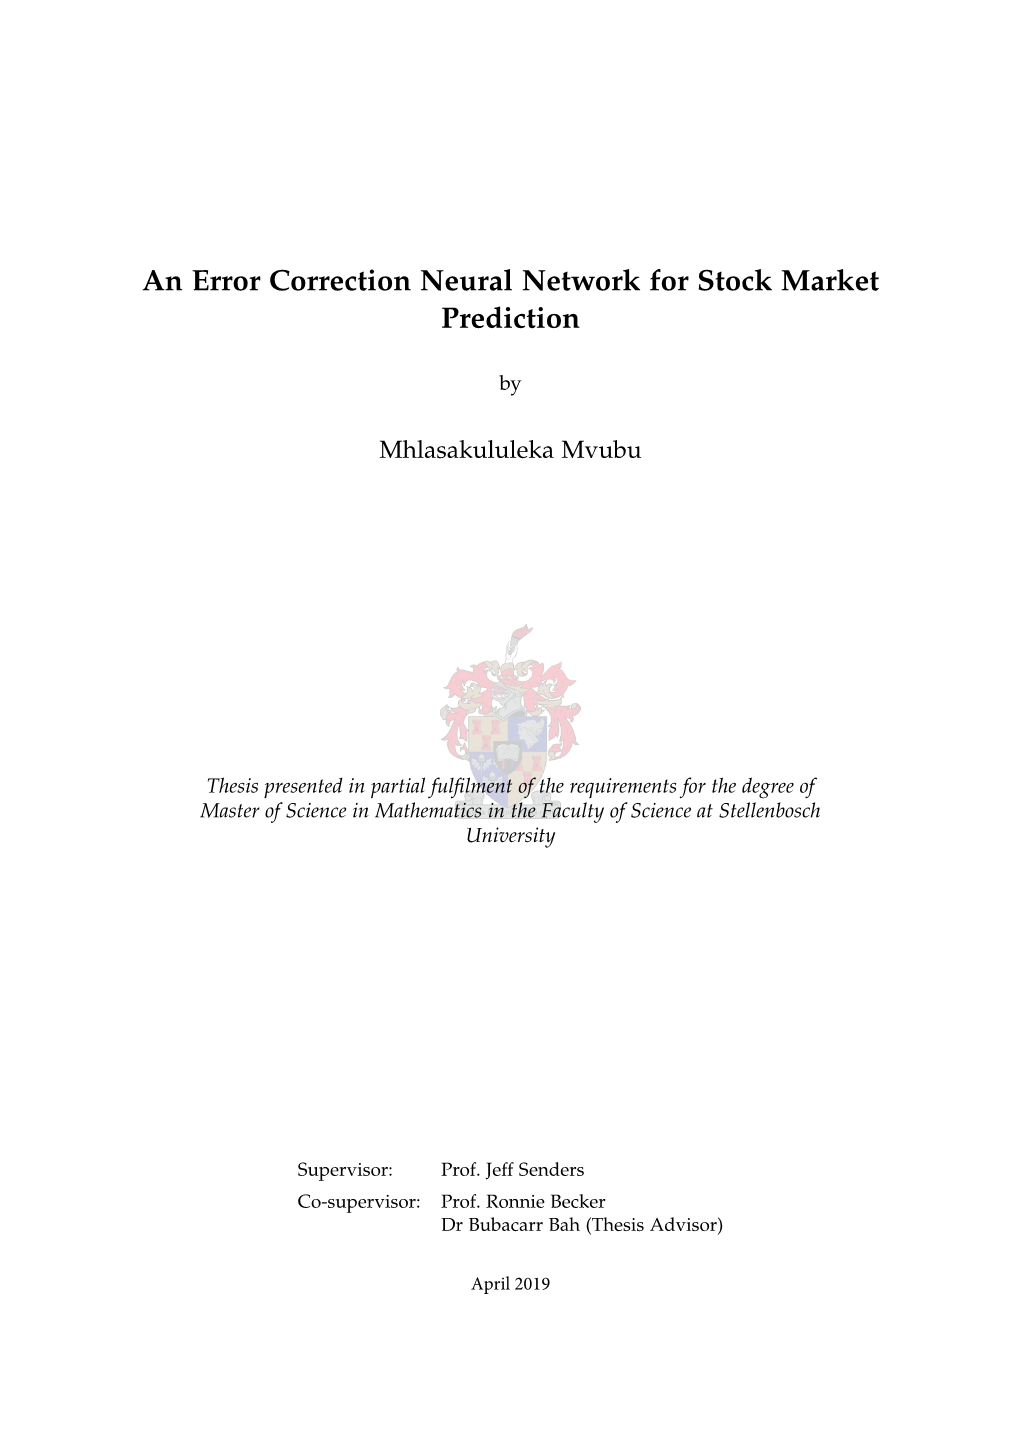 An Error Correction Neural Network for Stock Market Prediction